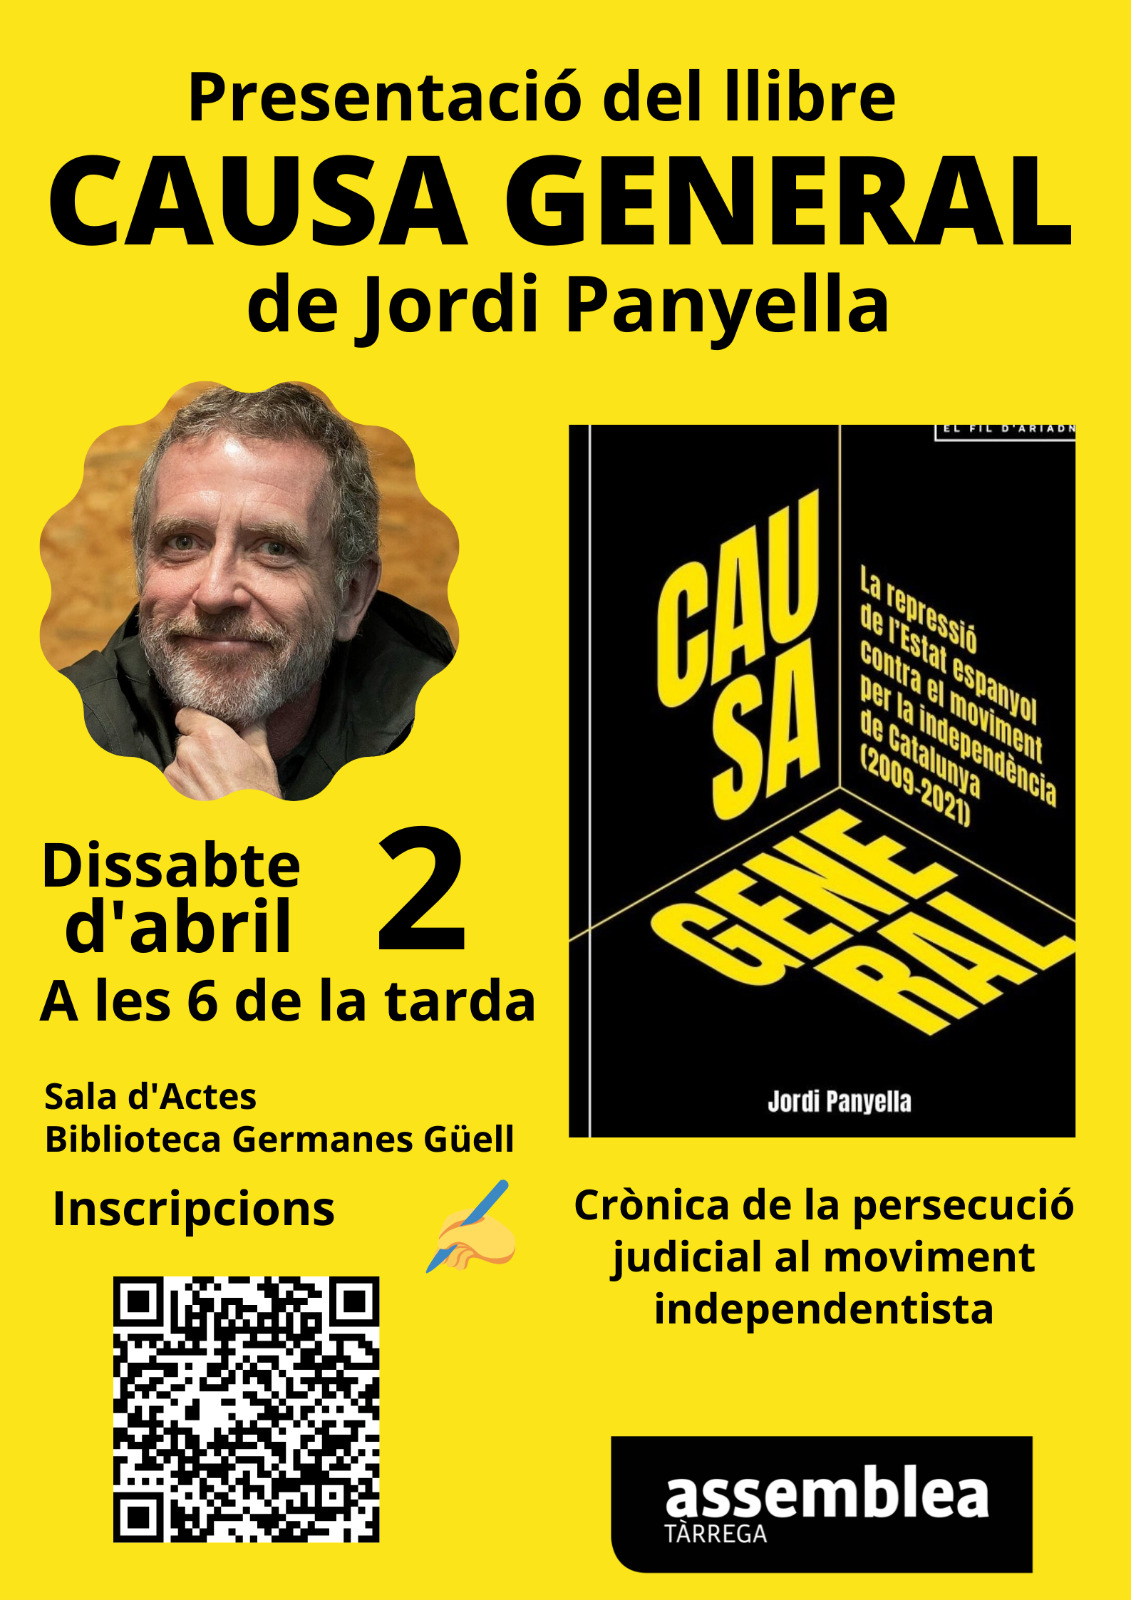 Presentació del llibre 'Causa general', de Jordi Panyella